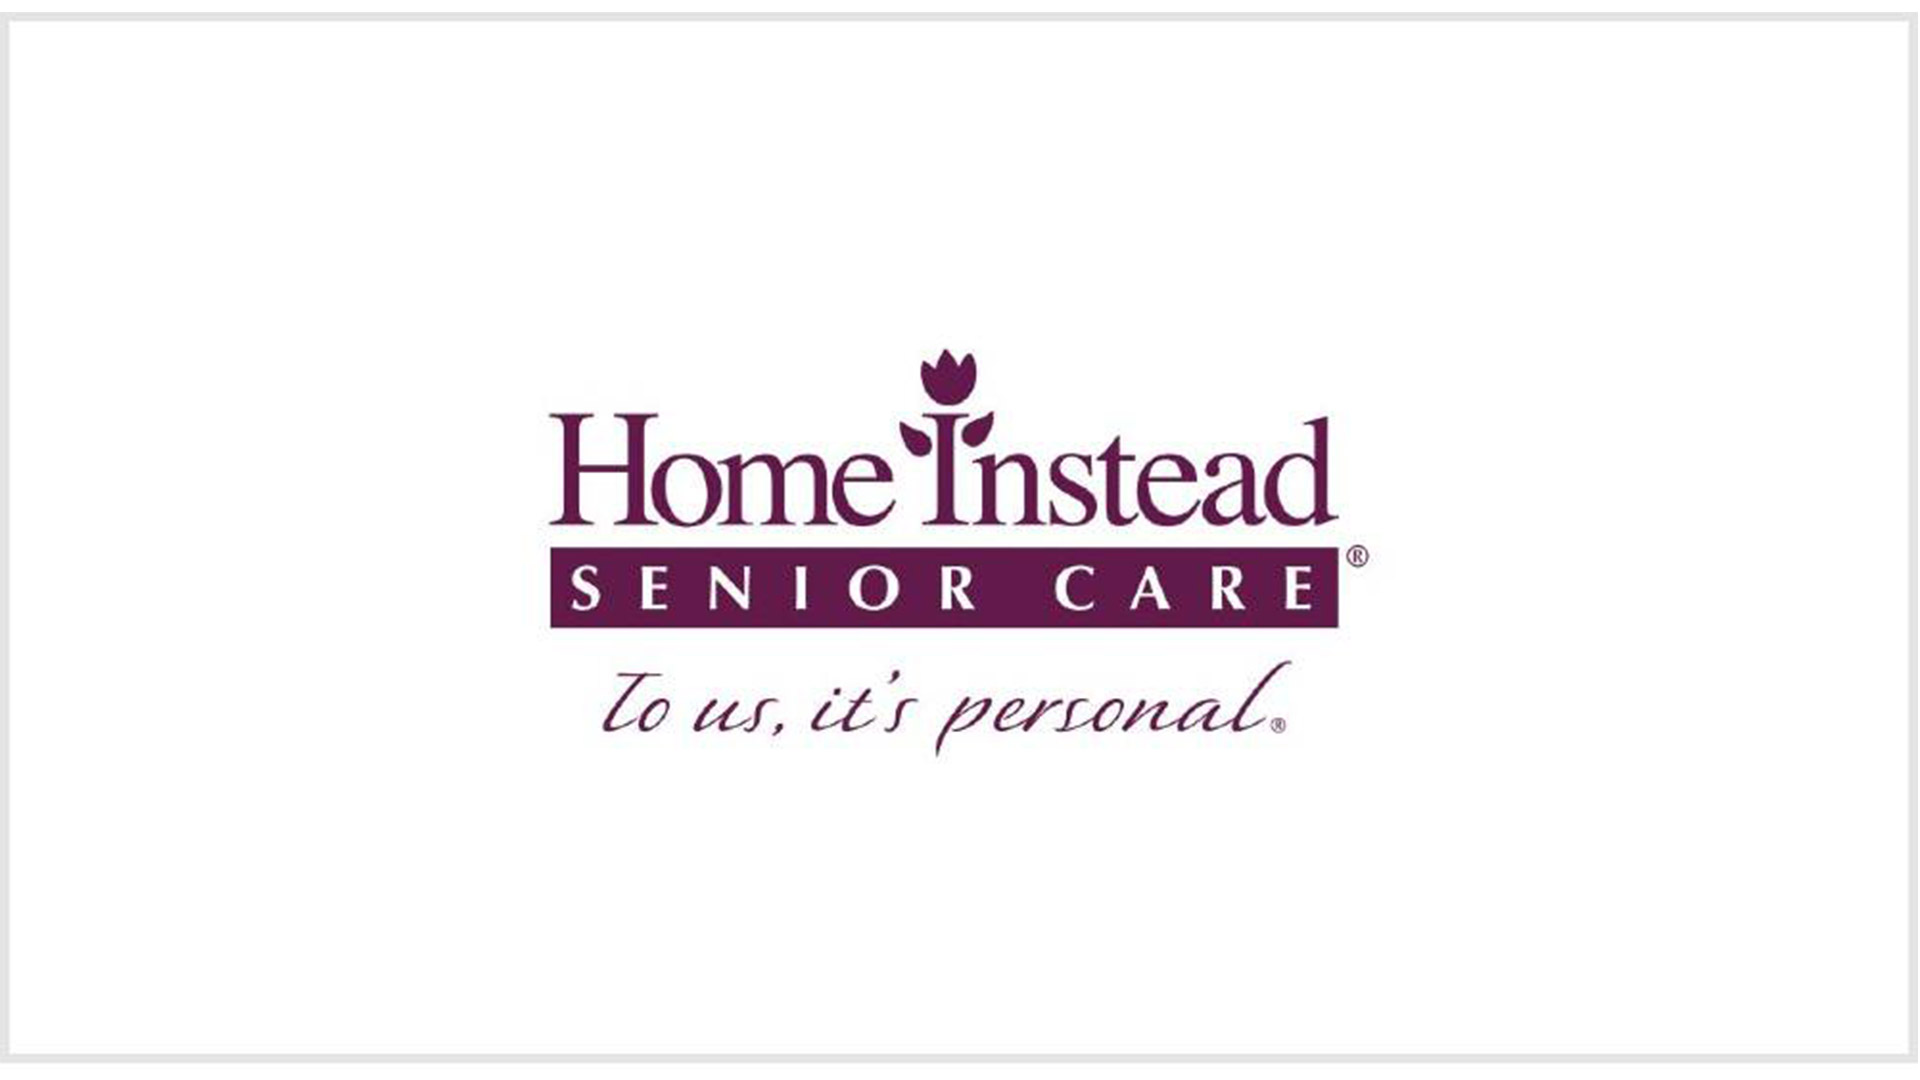 Home Instead Senior Care business logo